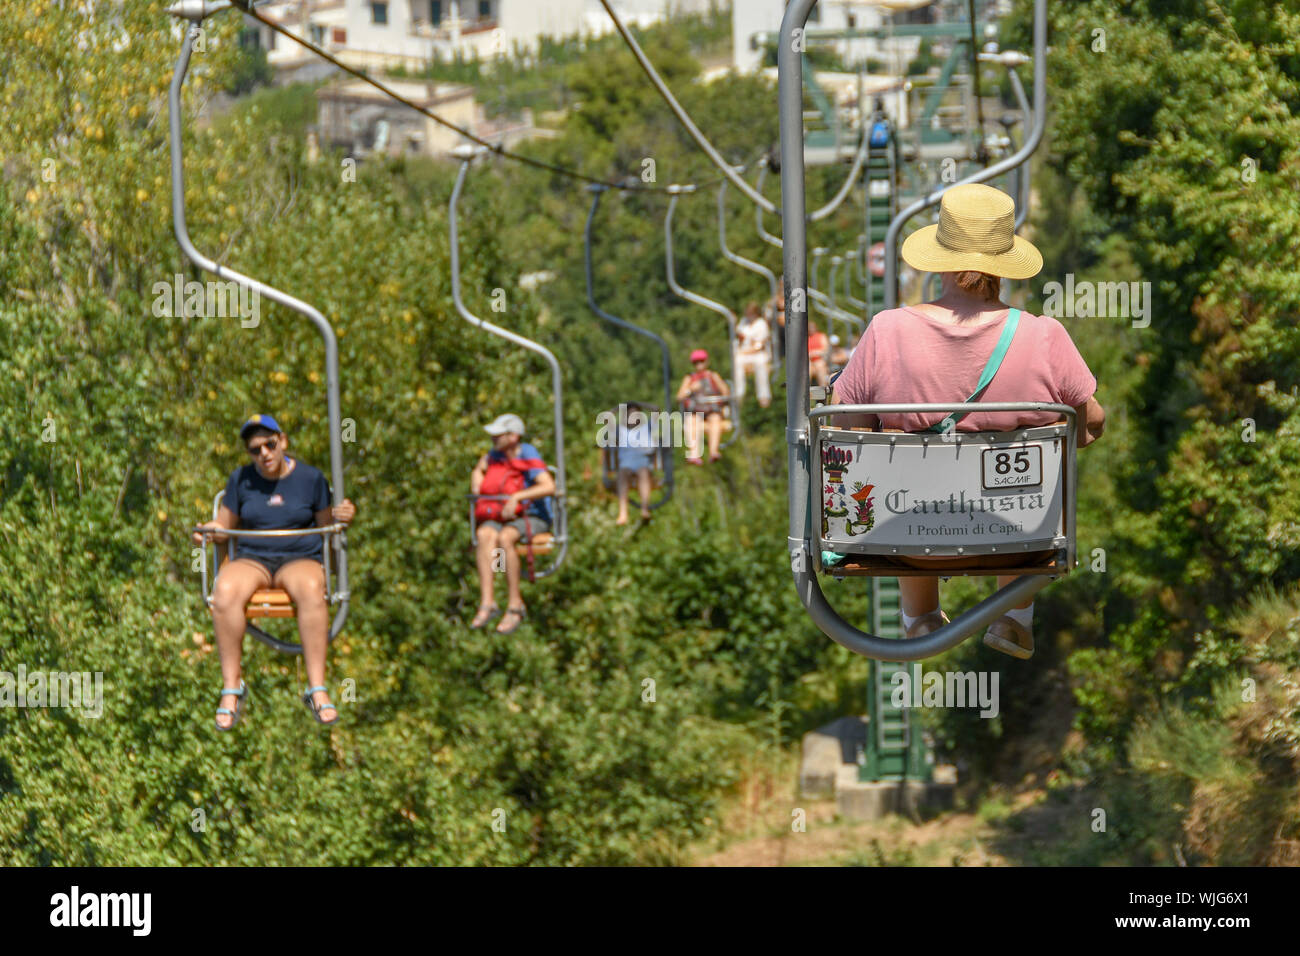 ANACAPRI, à l'île de Capri, ITALIE - AOÛT 2019 : les visiteurs sur un télésiège qui voyagent vers le haut et vers le bas pour le sommet du Mont Solaro, Anacapri ci-dessus Banque D'Images